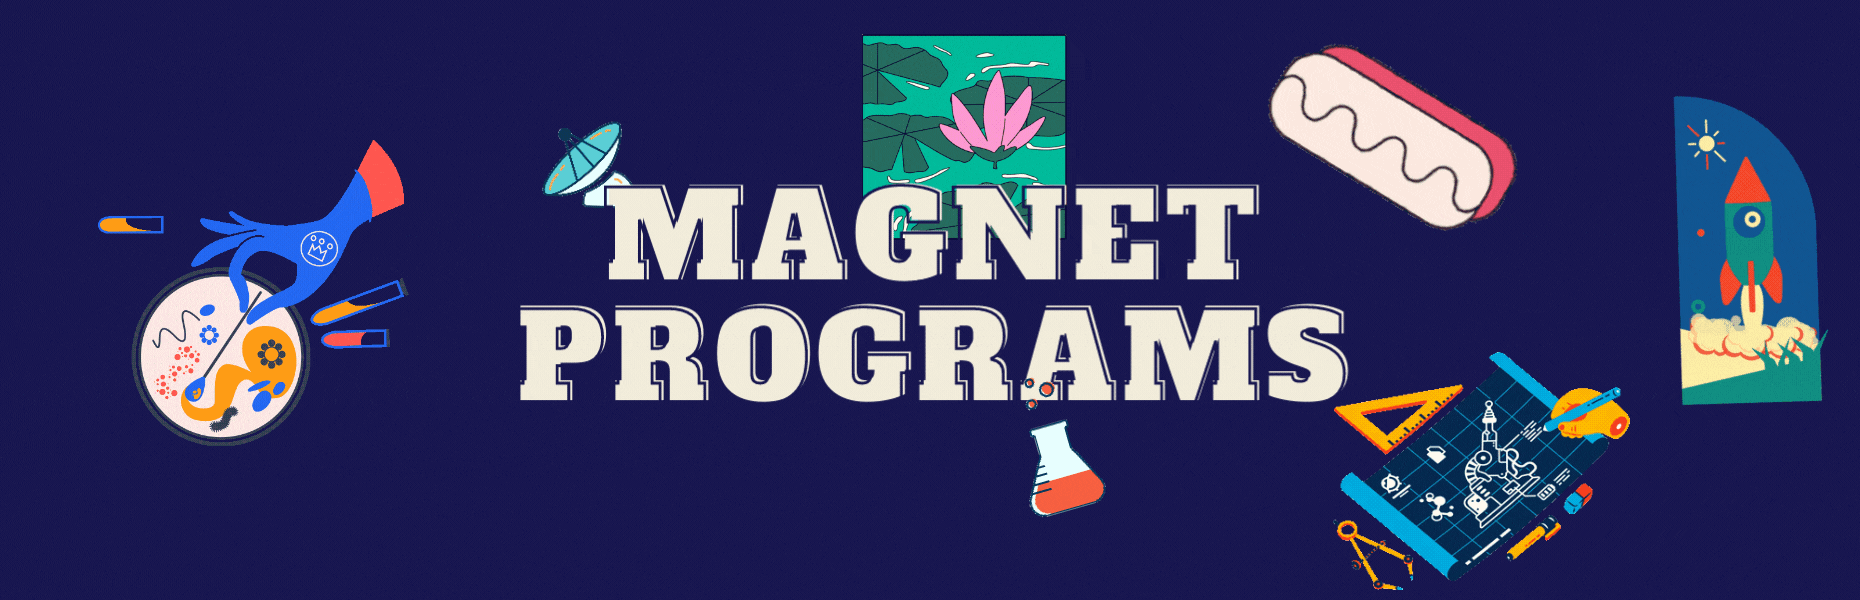 Magnet Program Information